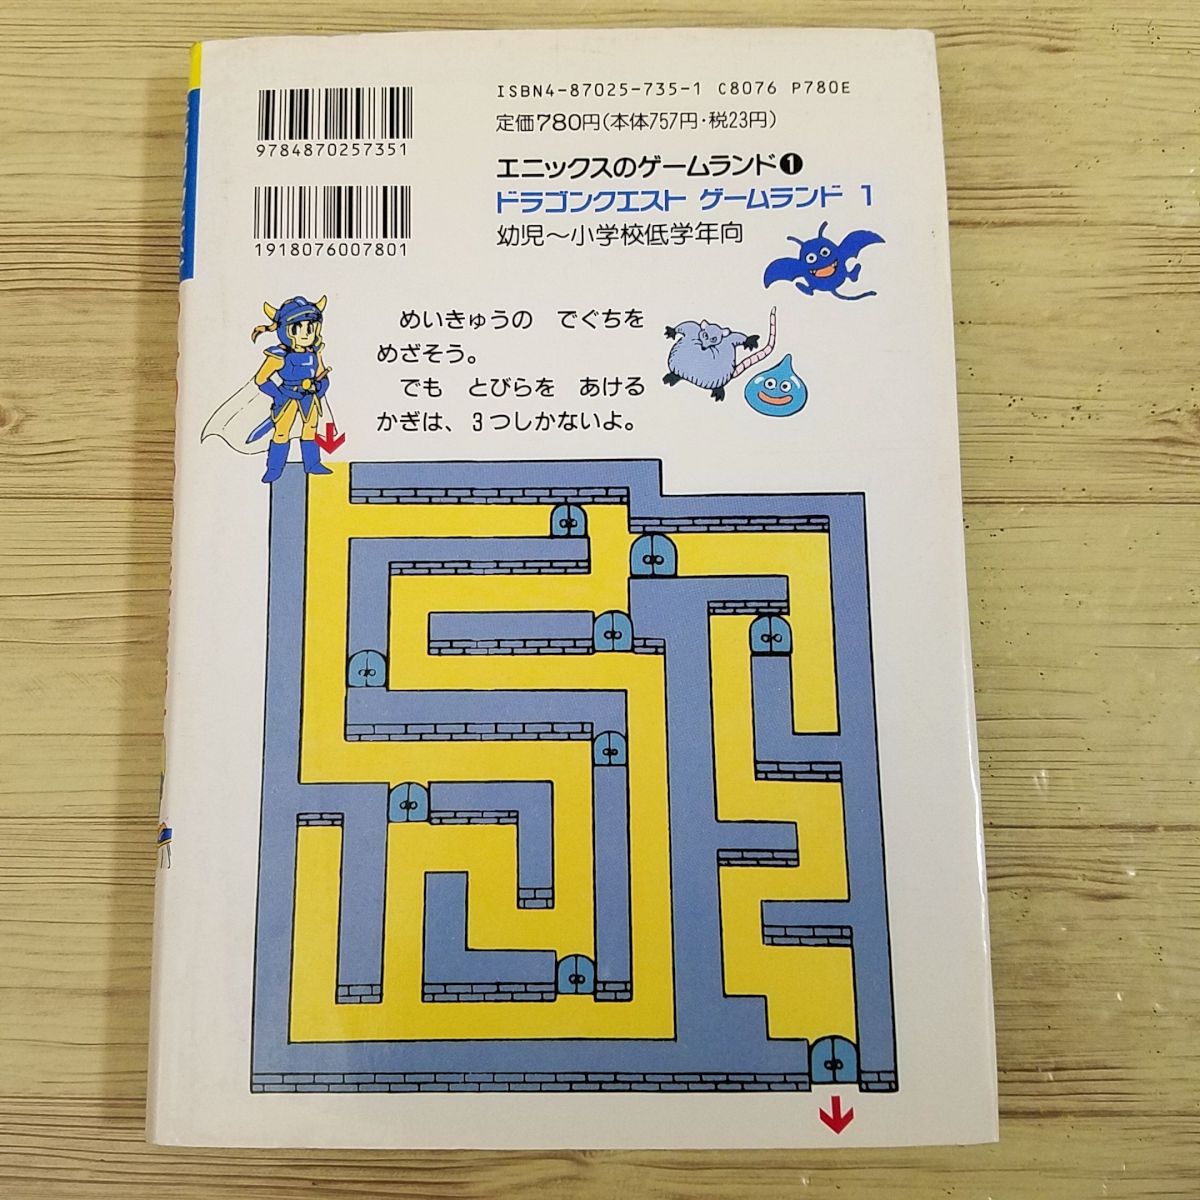  игра книга с картинками [ Dragon Quest игра Land 1.. клей .......( покрытие есть *1994 год первая версия )] гонг ke enix .. самец 2 ..